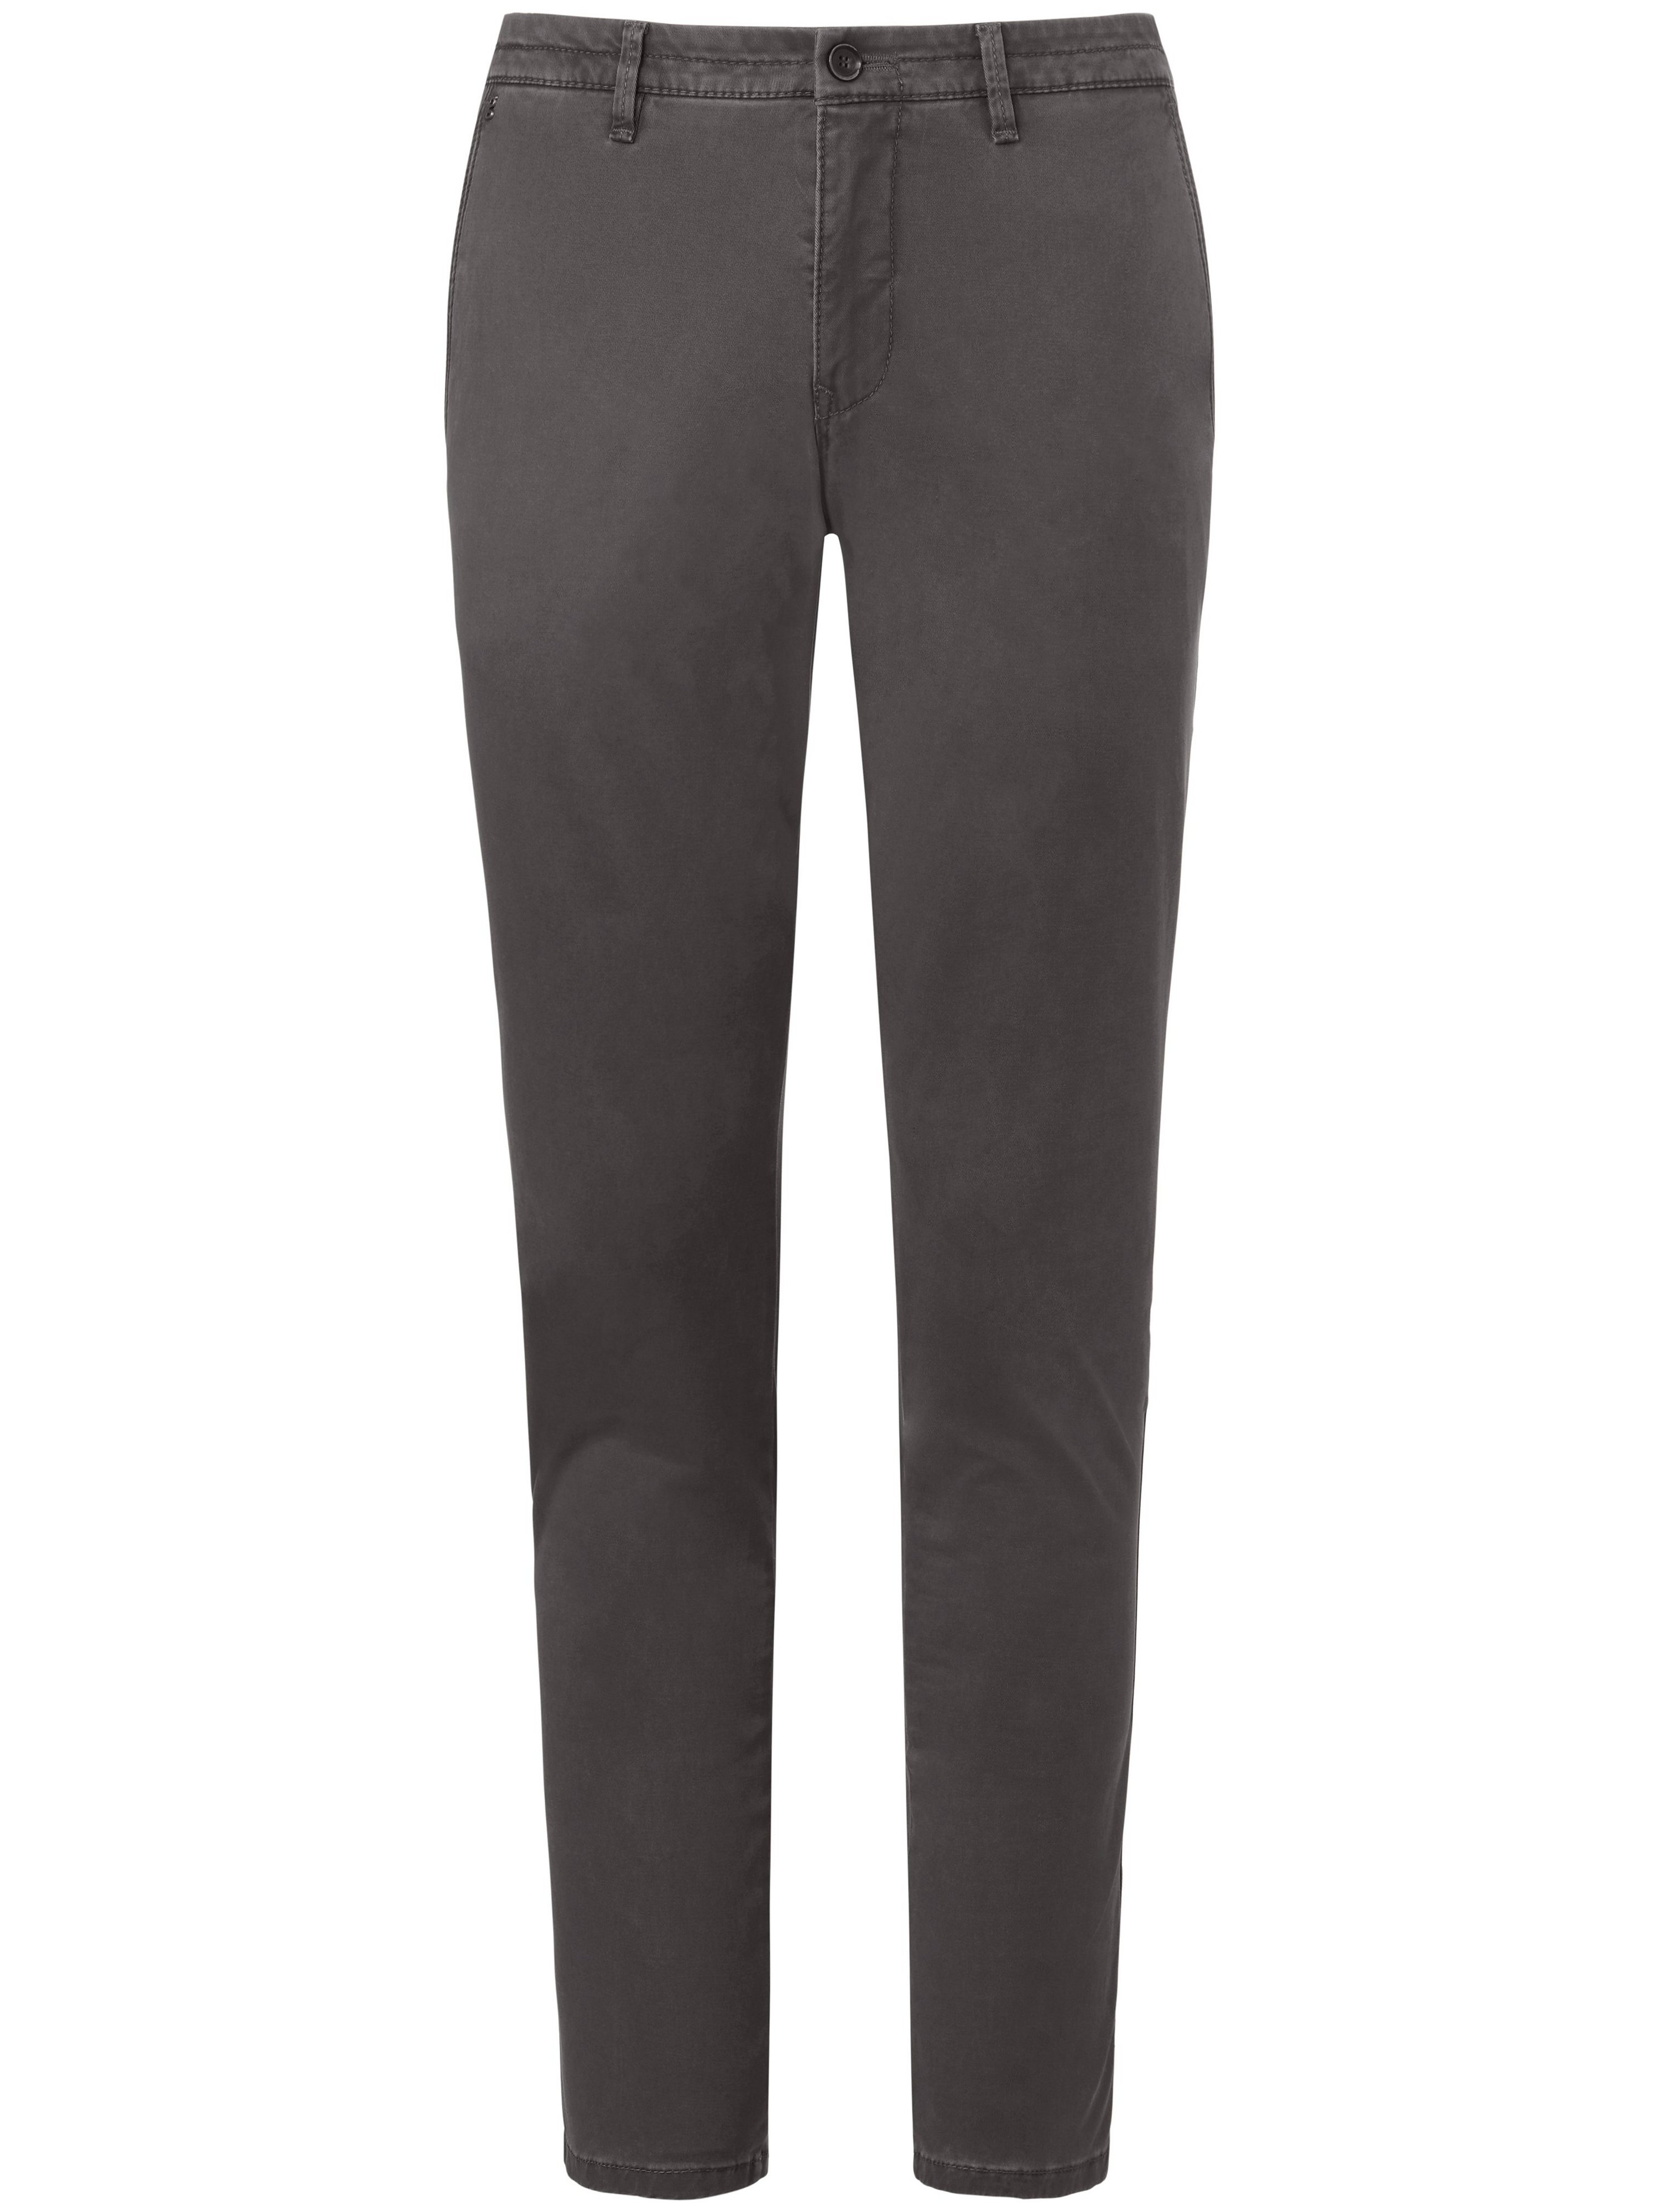 Le pantalon coupe Slim Fit modèle Sterling  gardeur gris taille 26